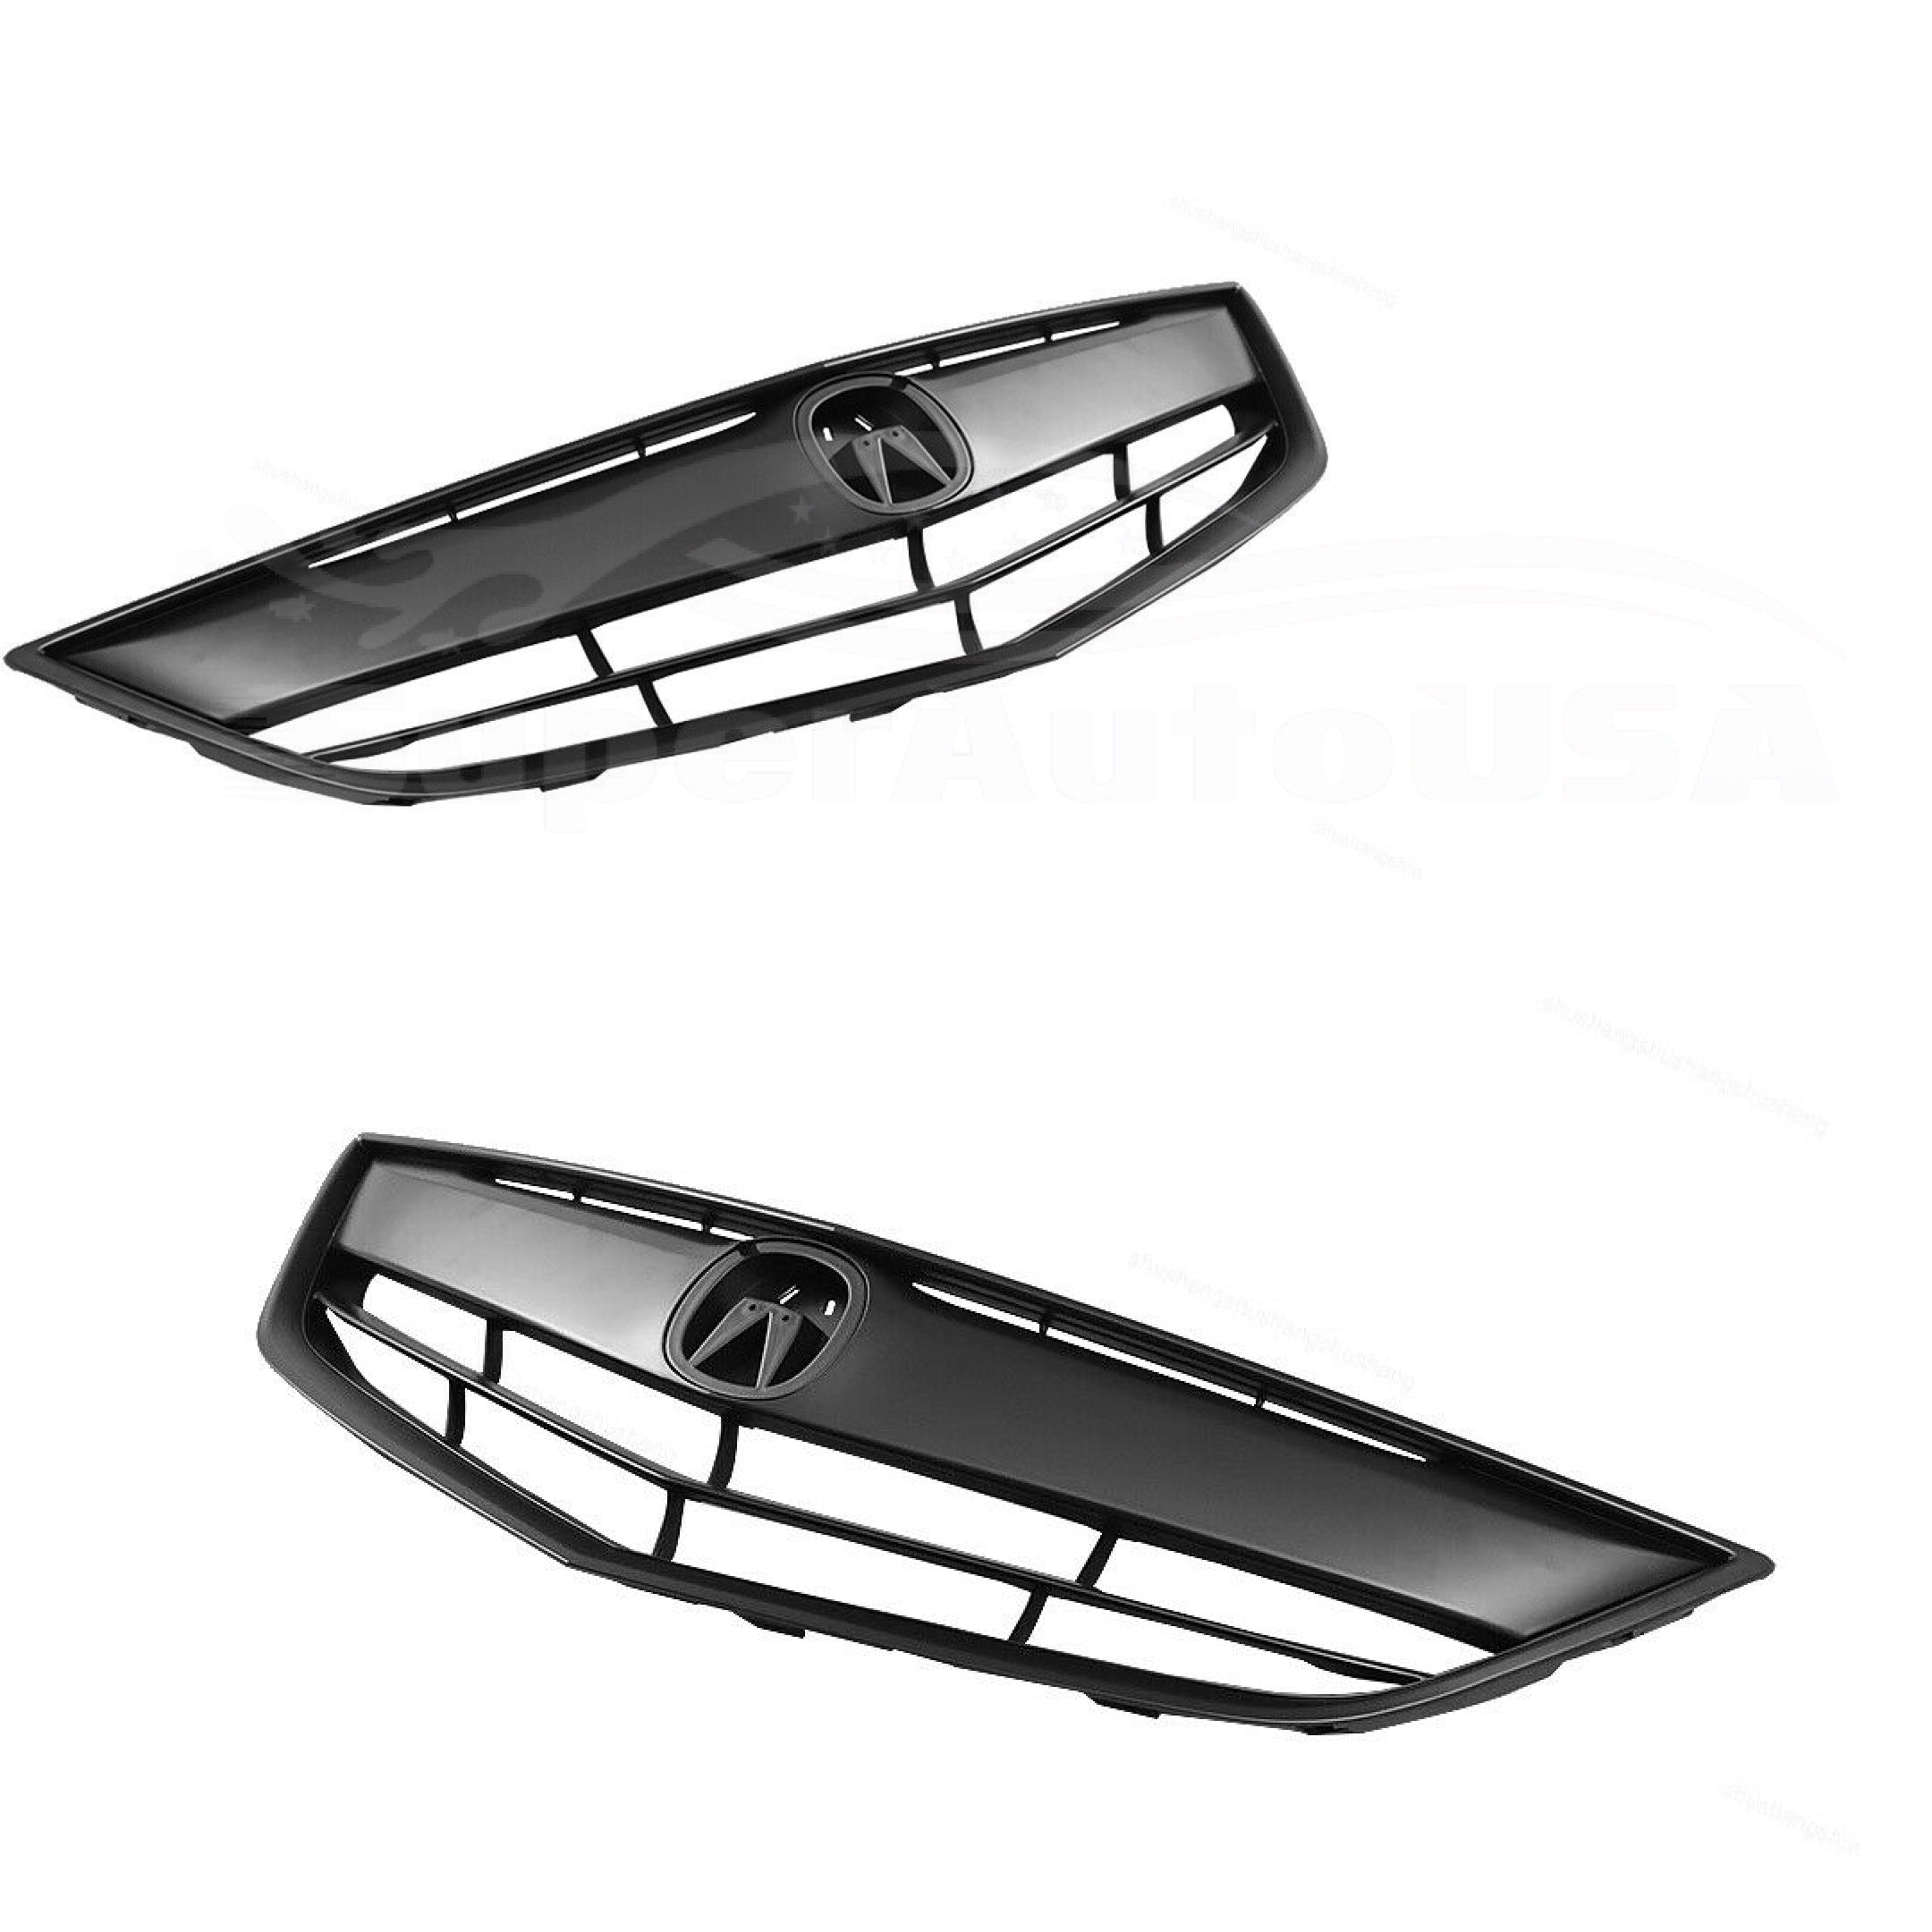 Para 2013-2015 Acura ILX Ensamblaje de rejilla superior de parachoques delantero (pintado en negro mate)